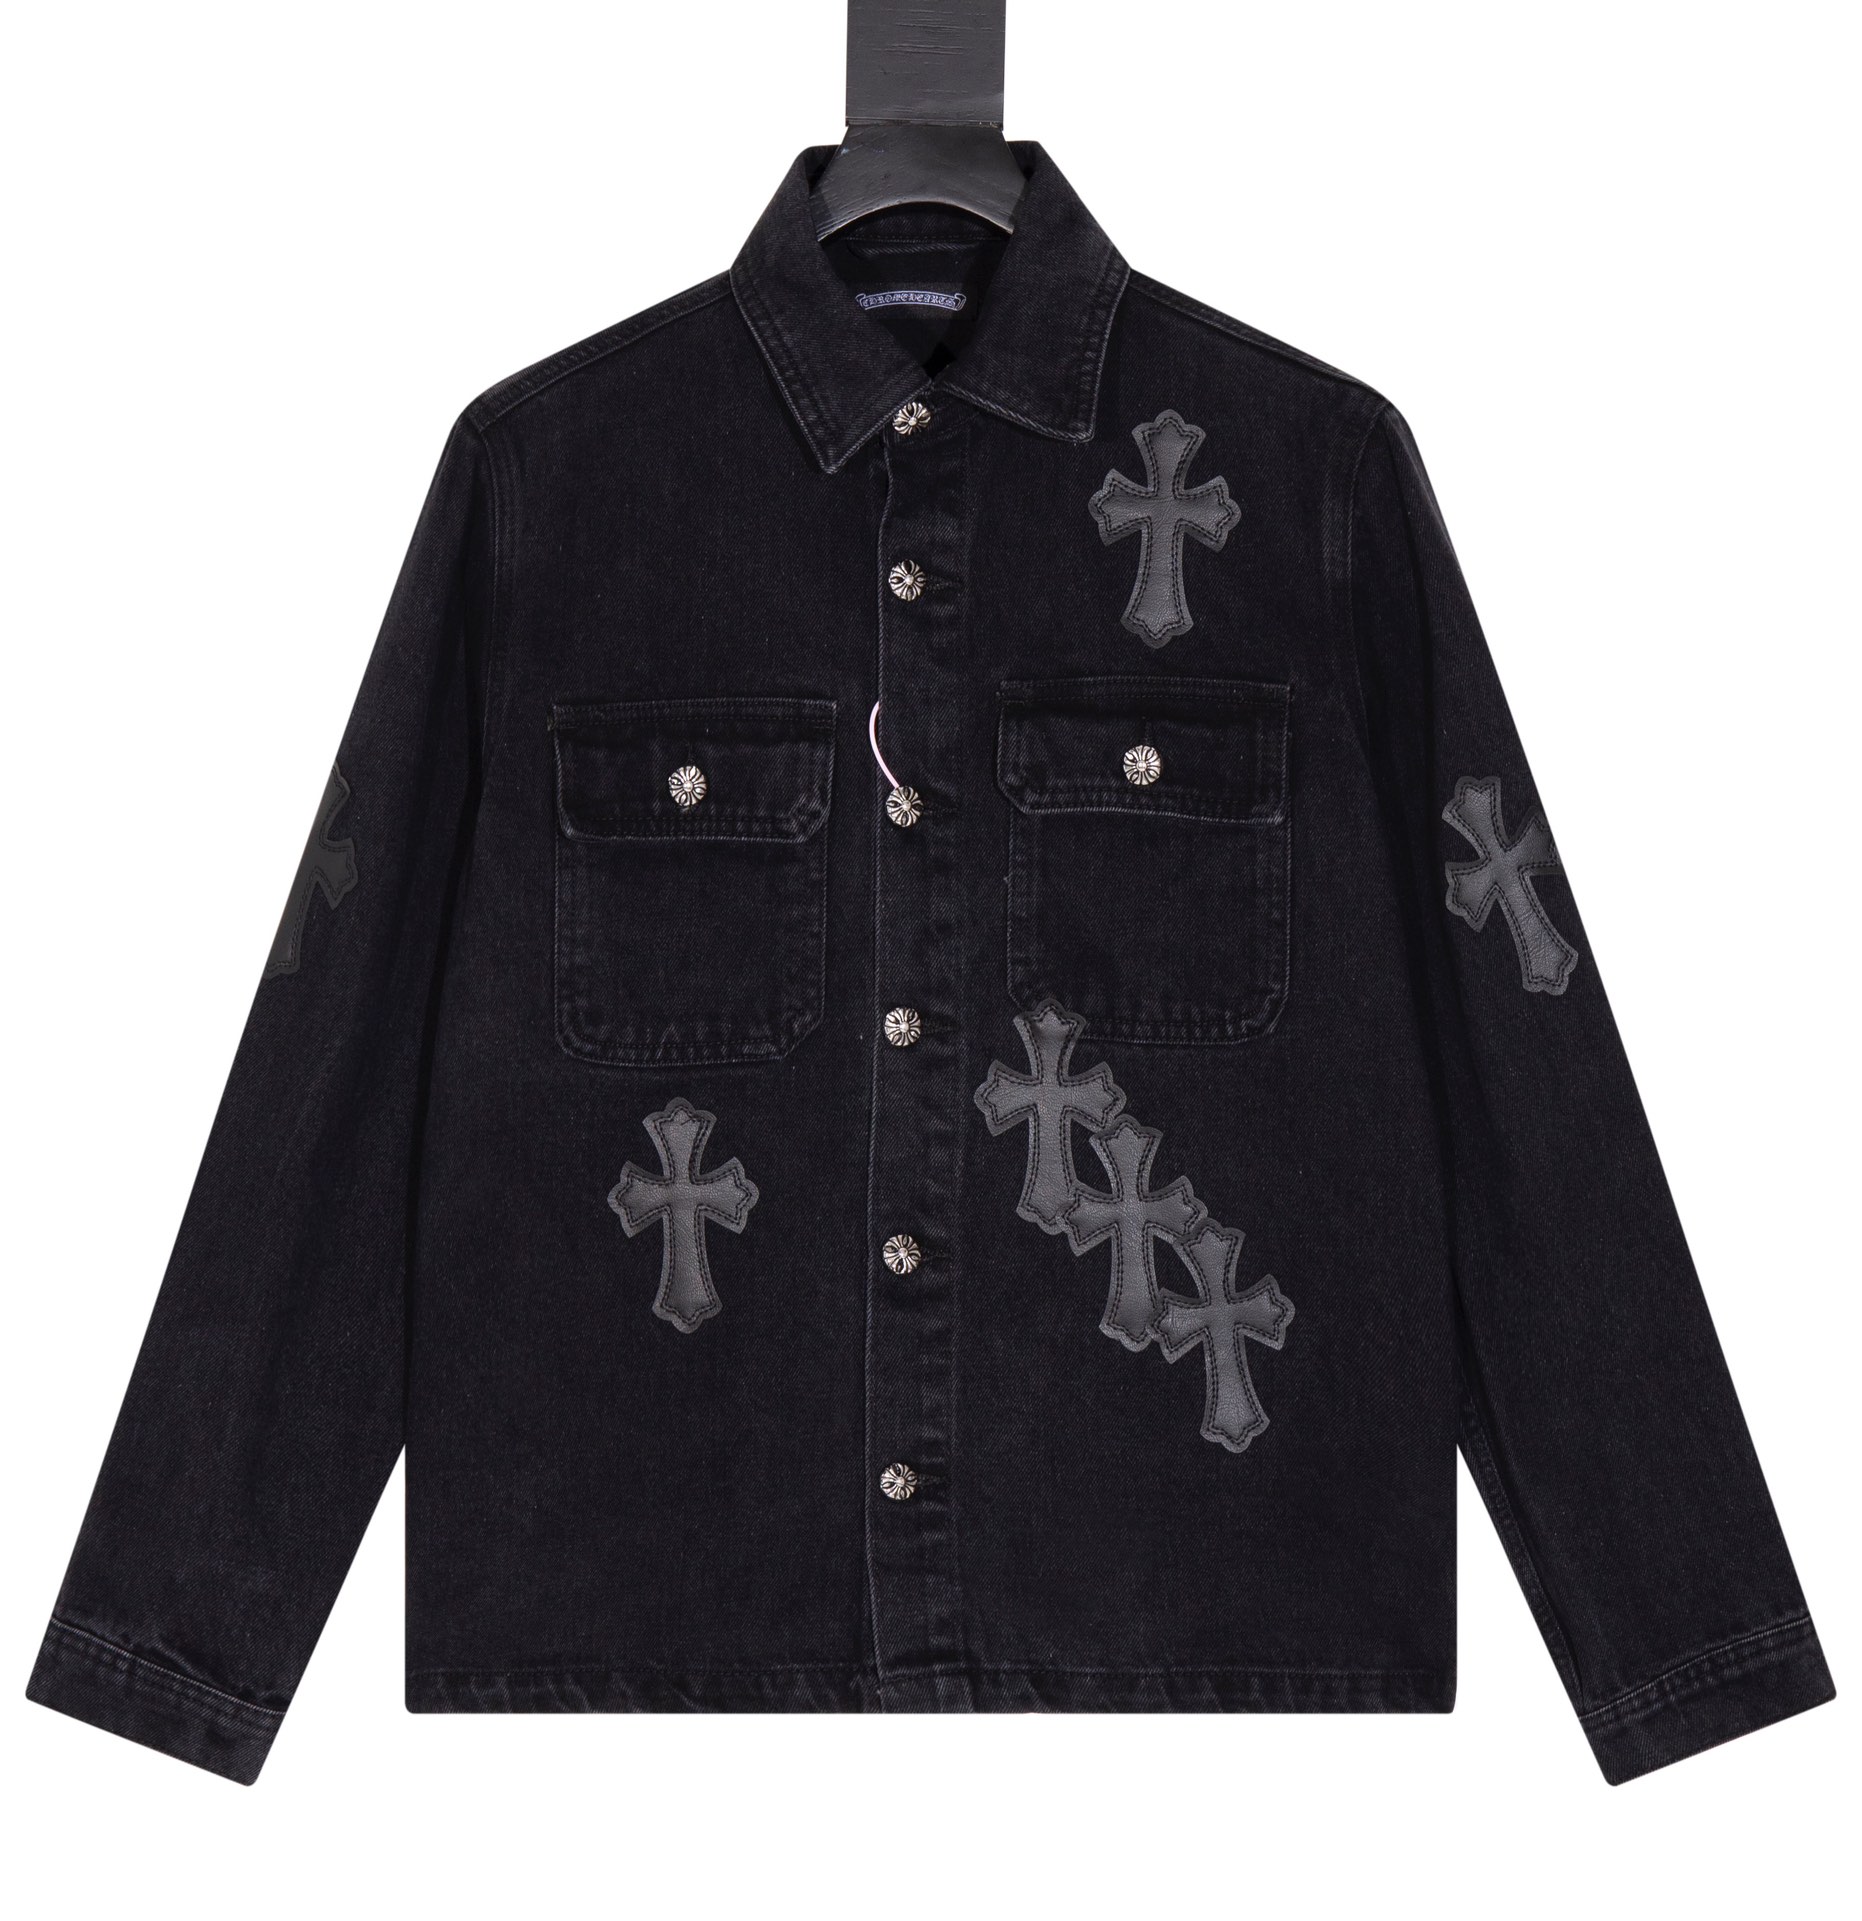 Chrome Hearts Clothing Coats & Jackets Black Embroidery Unisex Denim